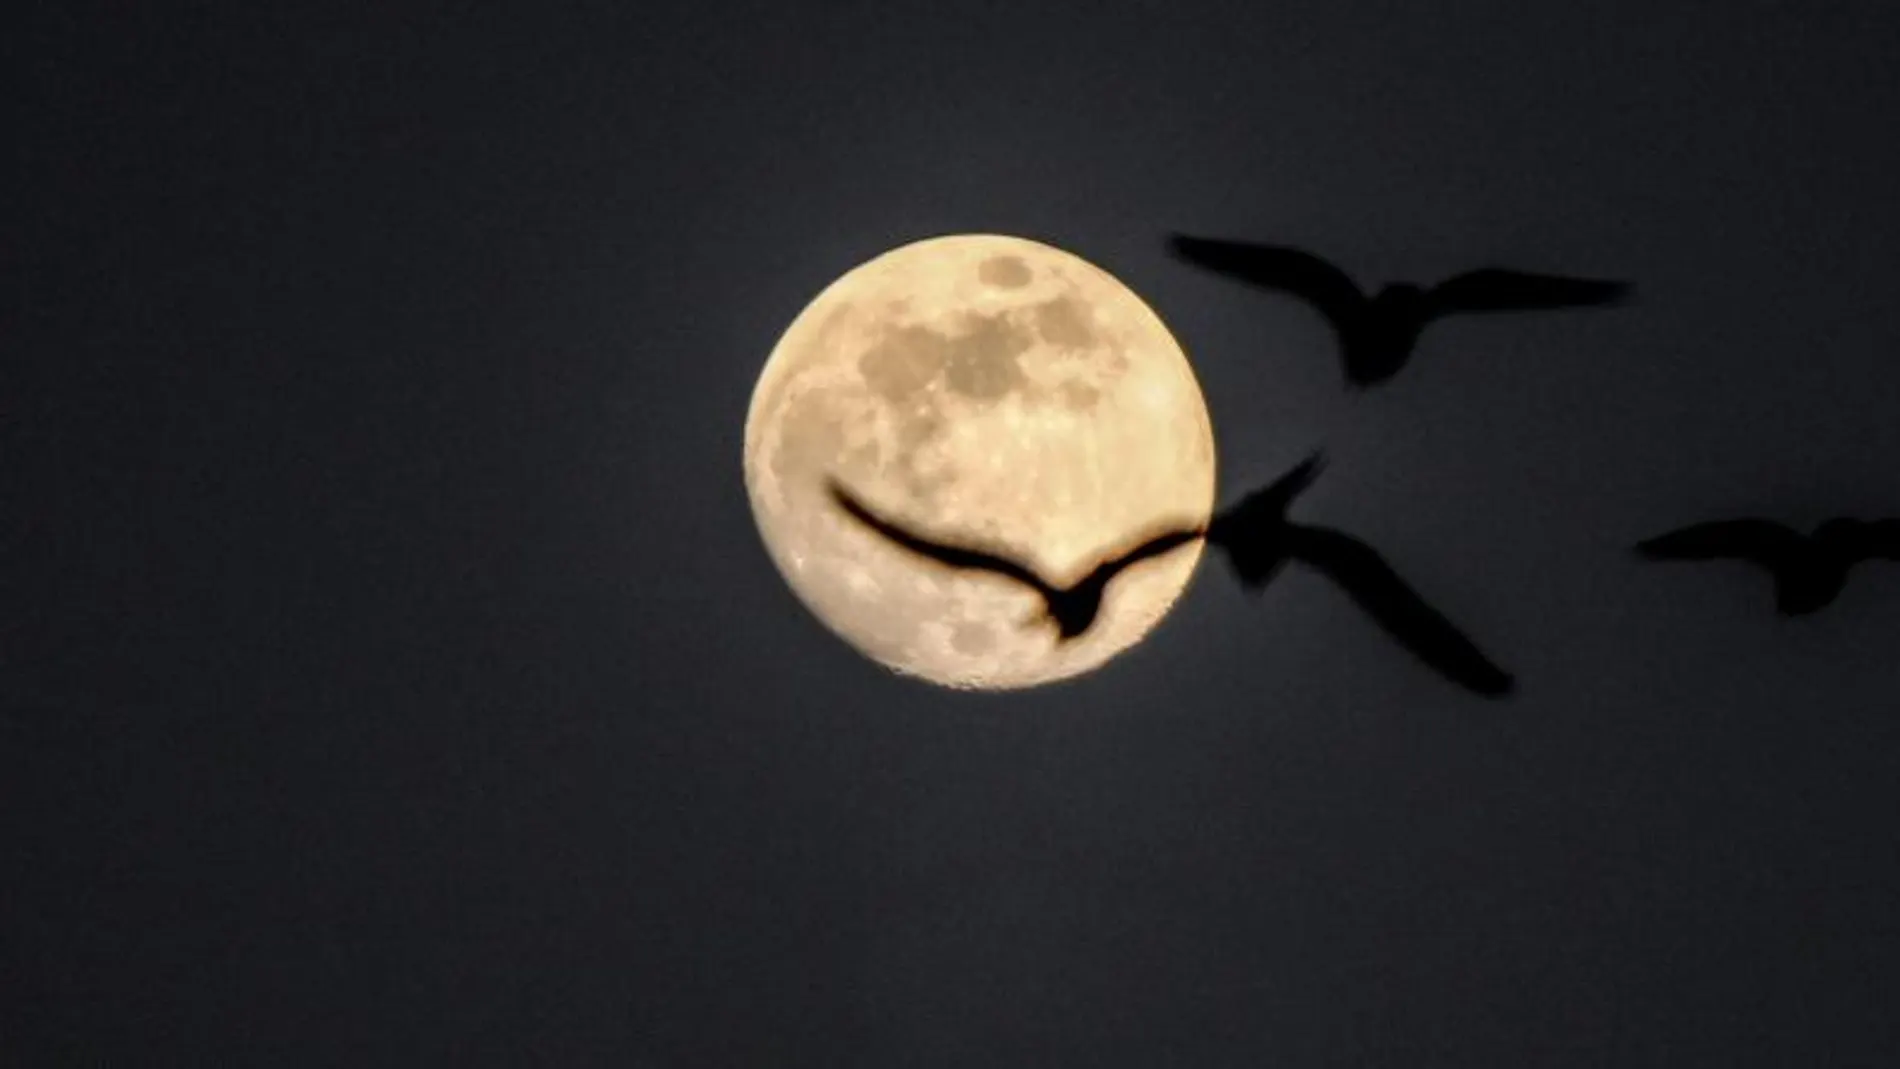 Algunas creencias populares afirman que durante la luna llena se producen más partos